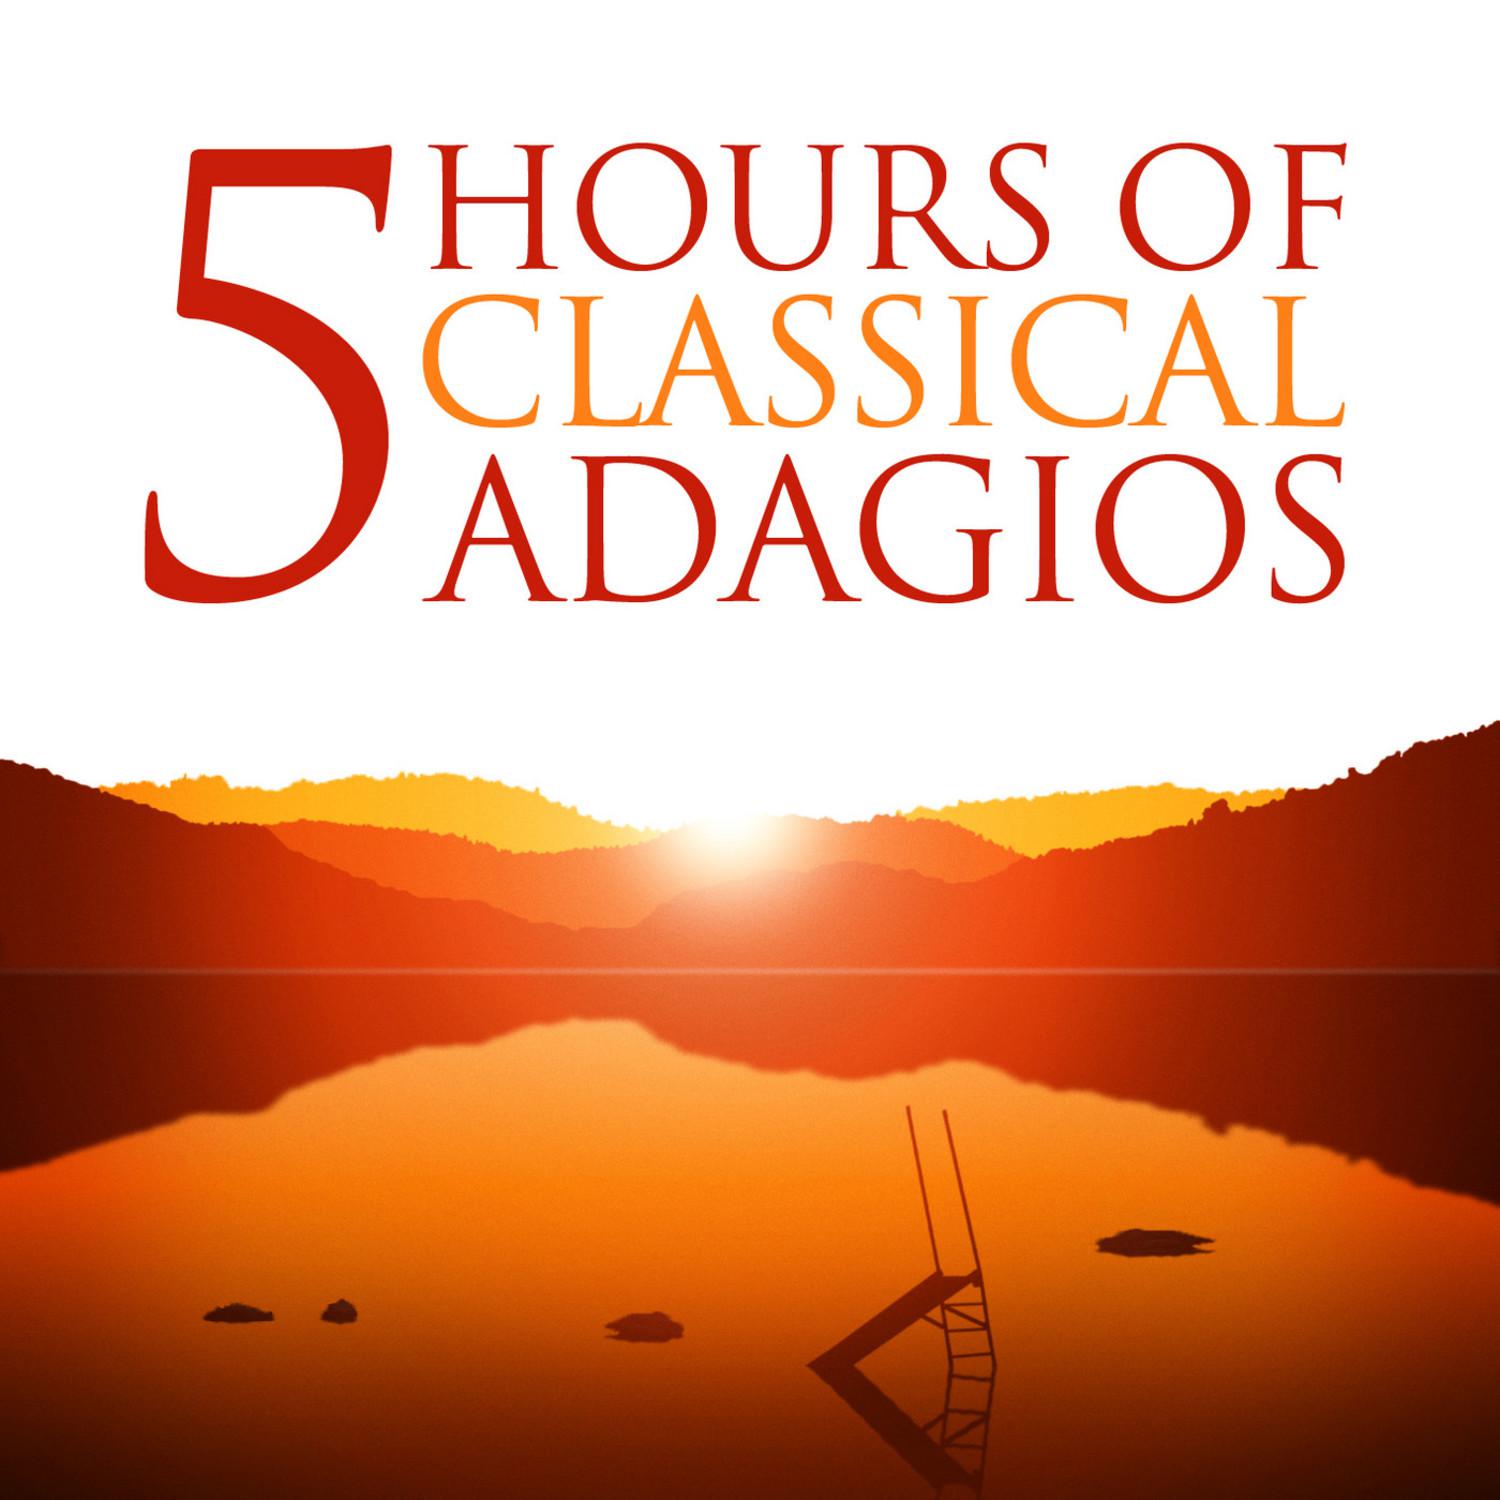 Concerto No. 1 in C Major for Cello and Orchestra, Hob. VIIb/1: II. Adagio